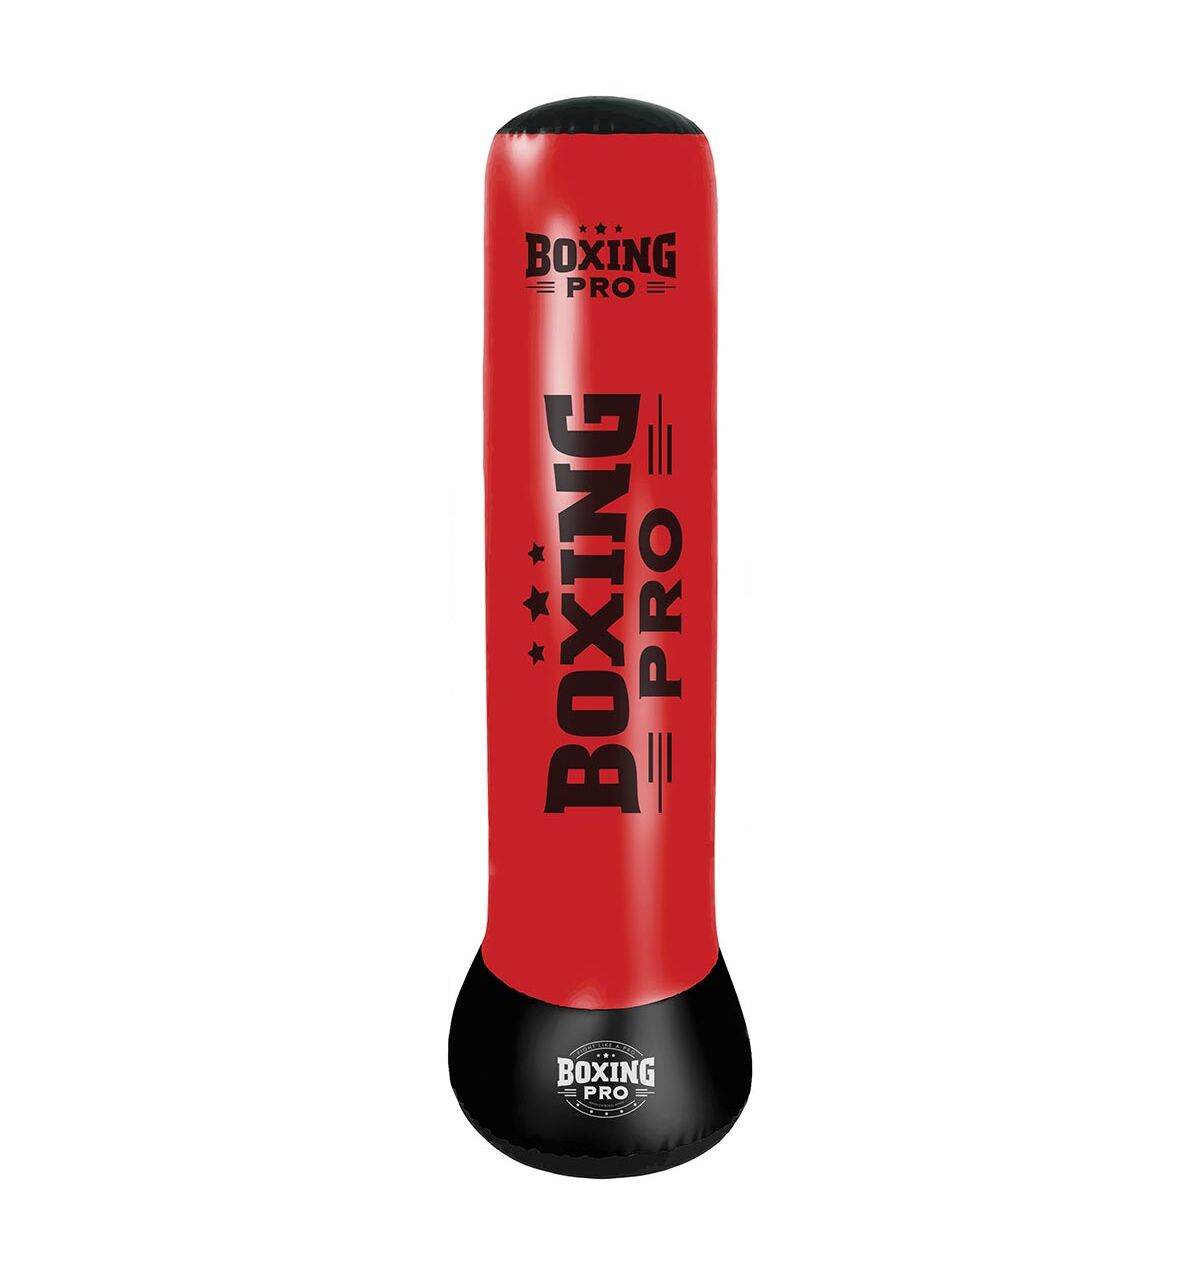 Επιδαπέδιος φουσκωτός σάκος Bag Boxing Pro Power Tower Red Logo